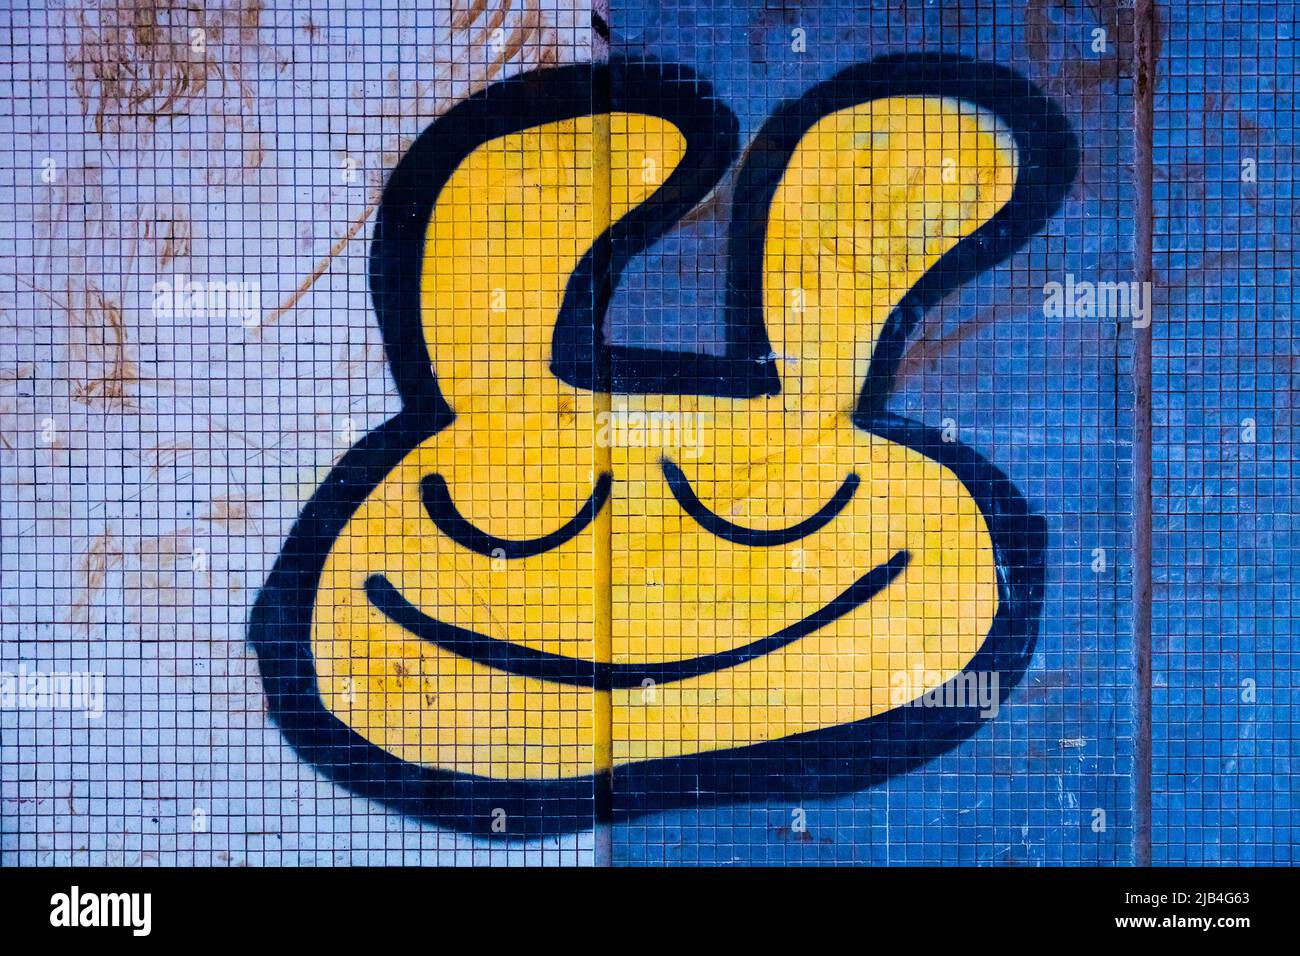 Graffiti amarillo sonriente dibujos animados pintadas de forma esprayada arte callejero con los ojos cerrados. Foto de stock